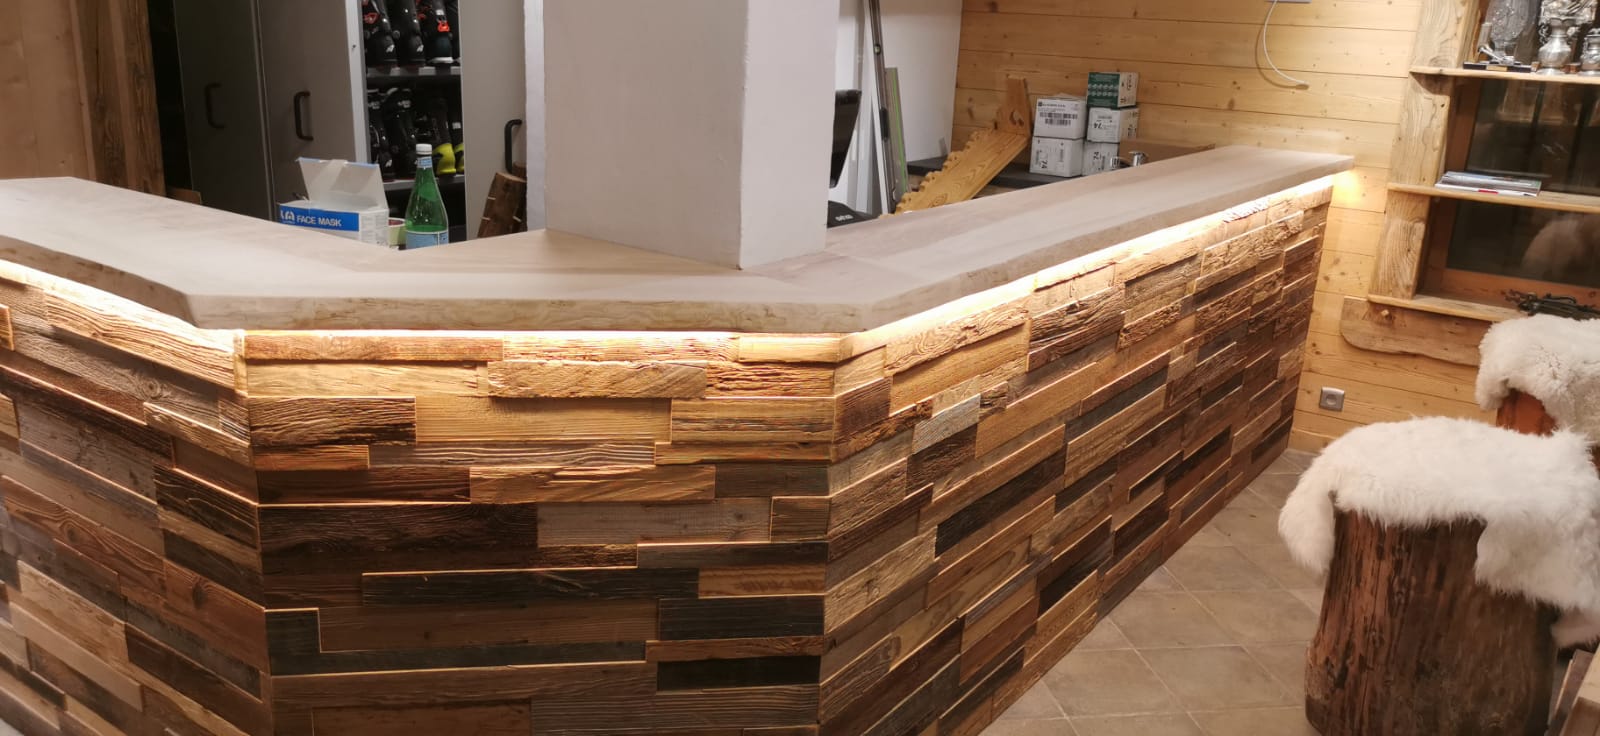 Fabrication et mise en place d'un bar en marbre et en bois avec led intégrées